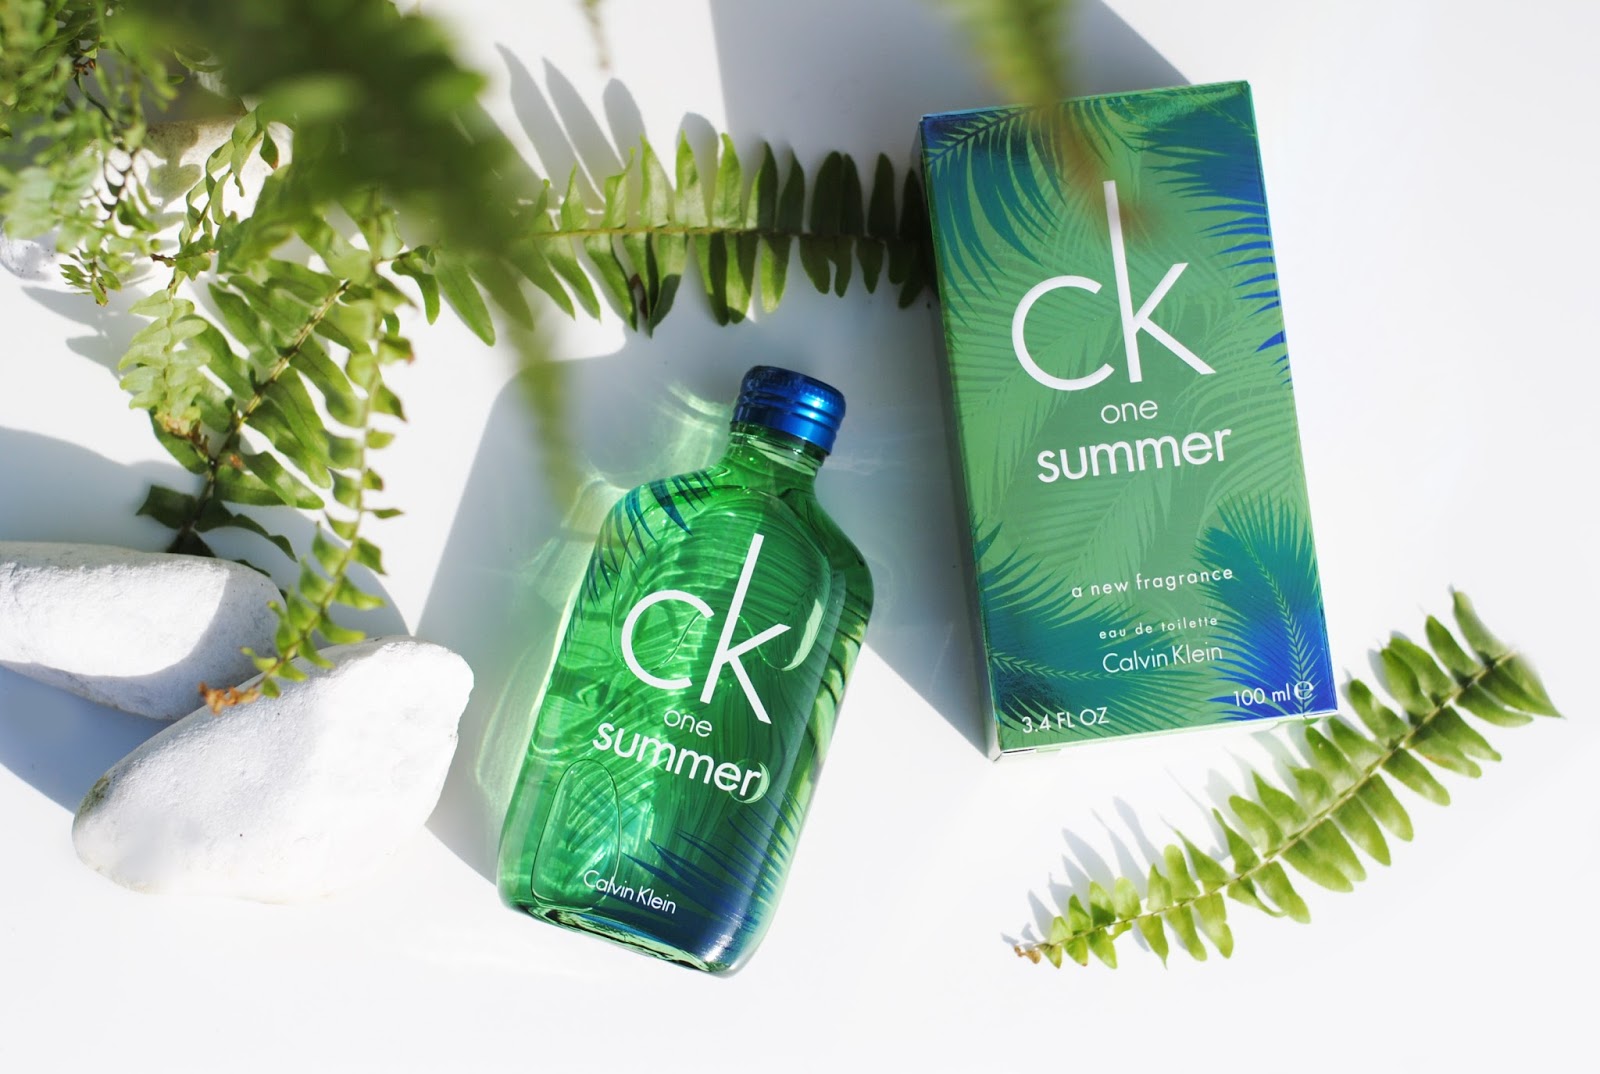 Calvin Klein - CK One Summer: Best Summer Night colognes for women under $100